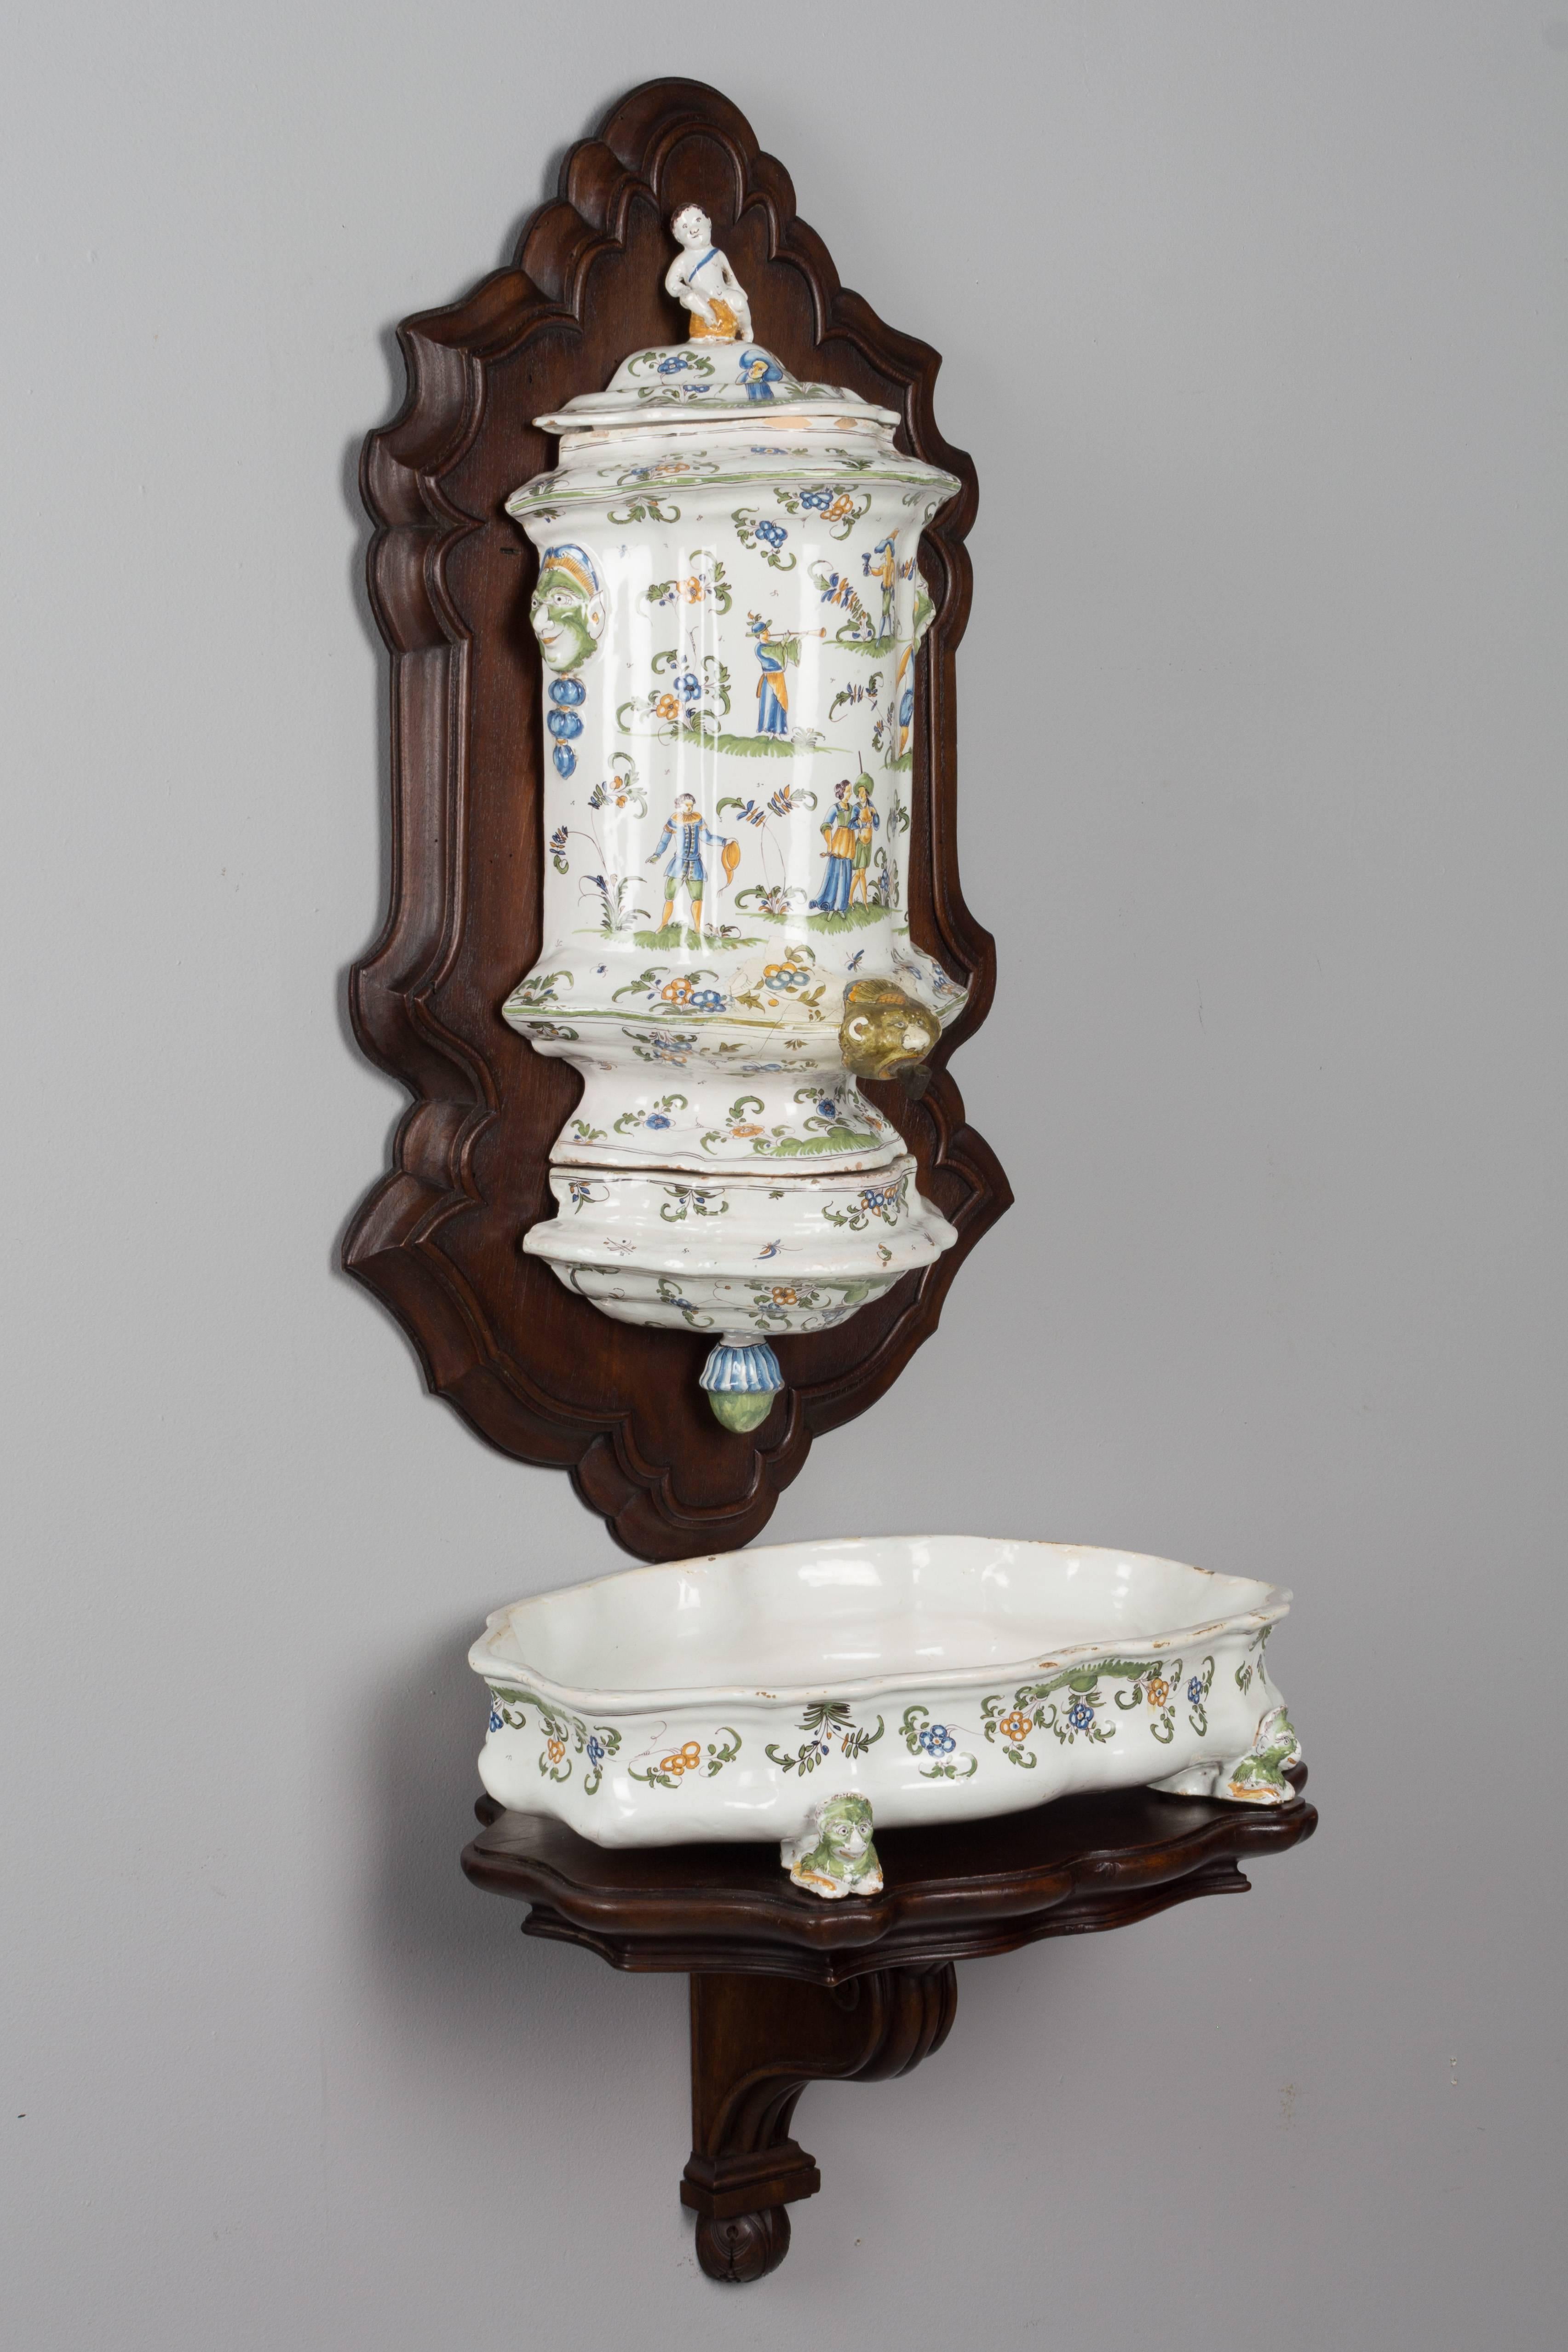 Ein französisches Fayence-Lavabo im Stil von Louis XV aus Moustiers. Die Urne besteht aus drei Teilen, die an einer Nussbaumplatte befestigt sind, und das flache Becken ruht auf einer Wandhalterung aus Nussbaum. Handbemalt in Blau, Grün und Gelb mit